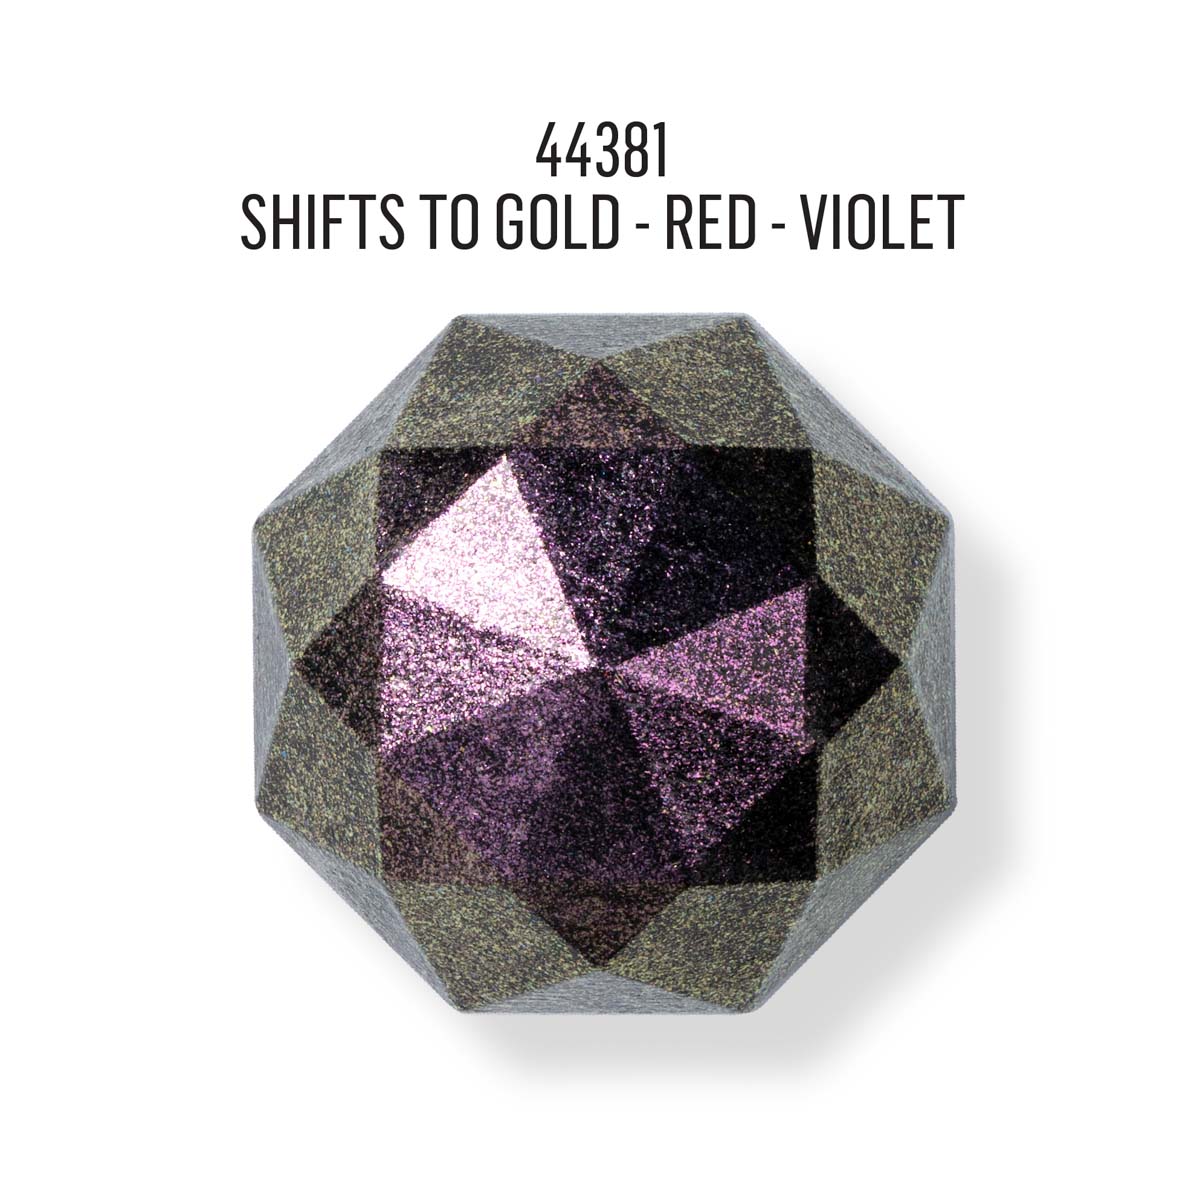 FolkArt ® Dragonfly Glaze™ - Gold-Red-Violet, 2 oz. - 44381